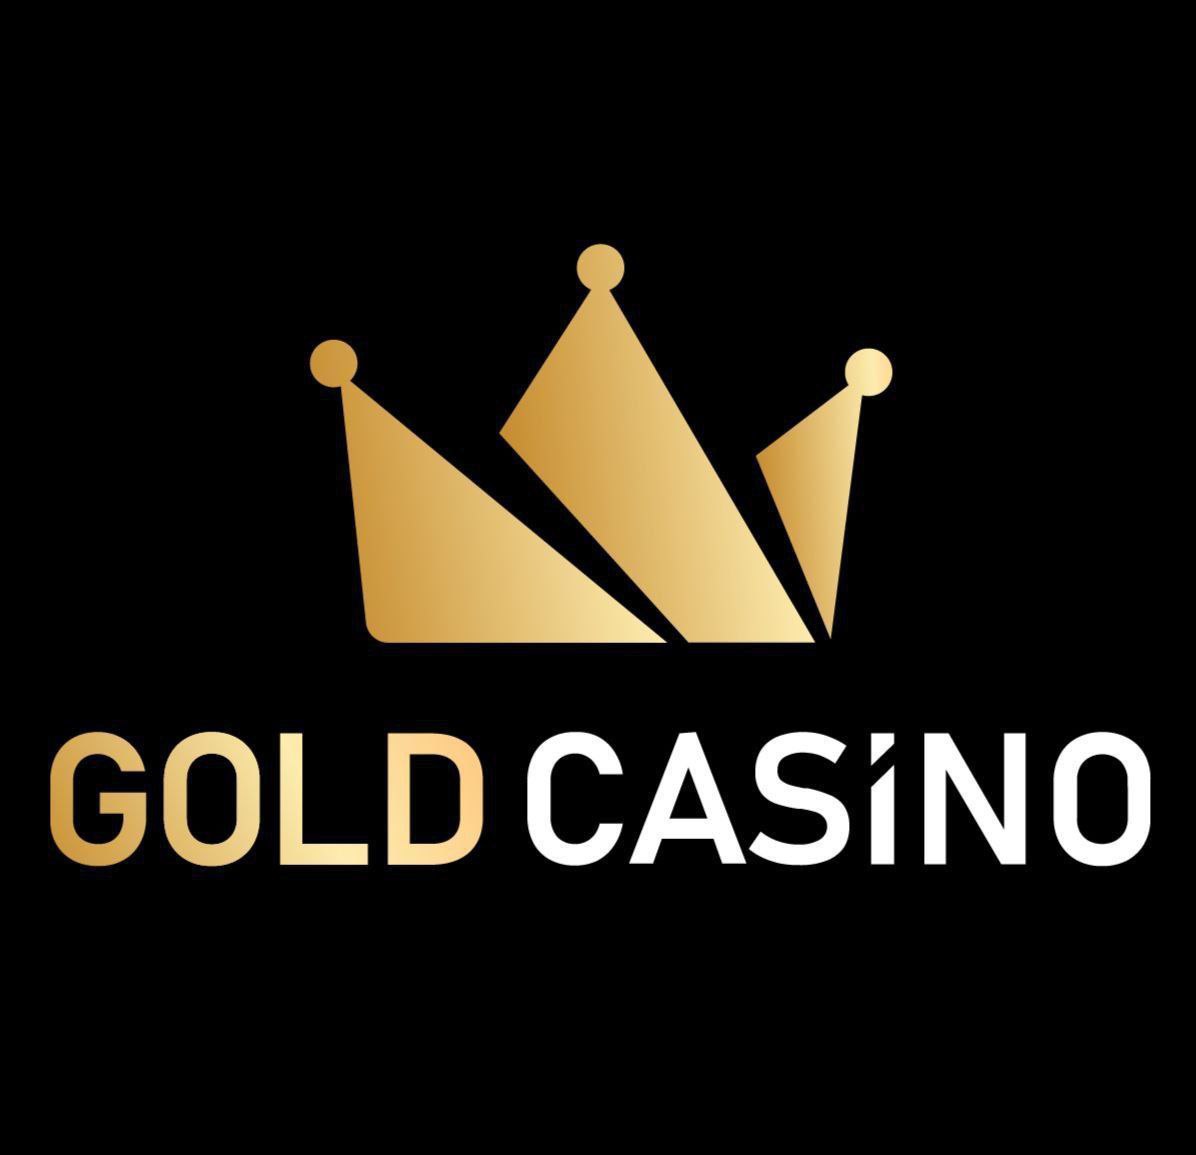 Официальный сайт Gold casino: описание и преимущества